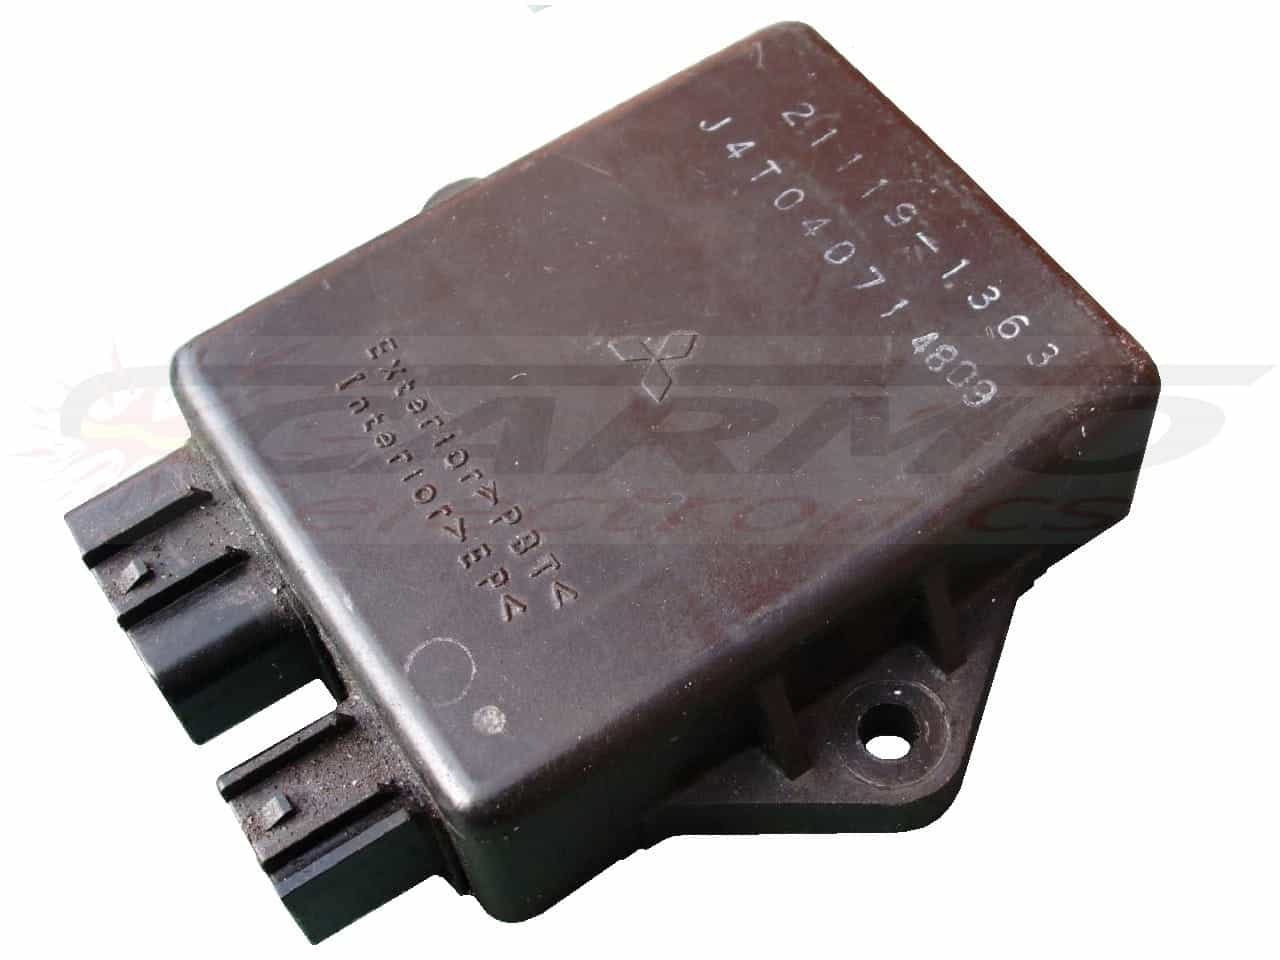 ZXR750 CDI TCI ECU igniter module (21119-1365, 21119-1363)